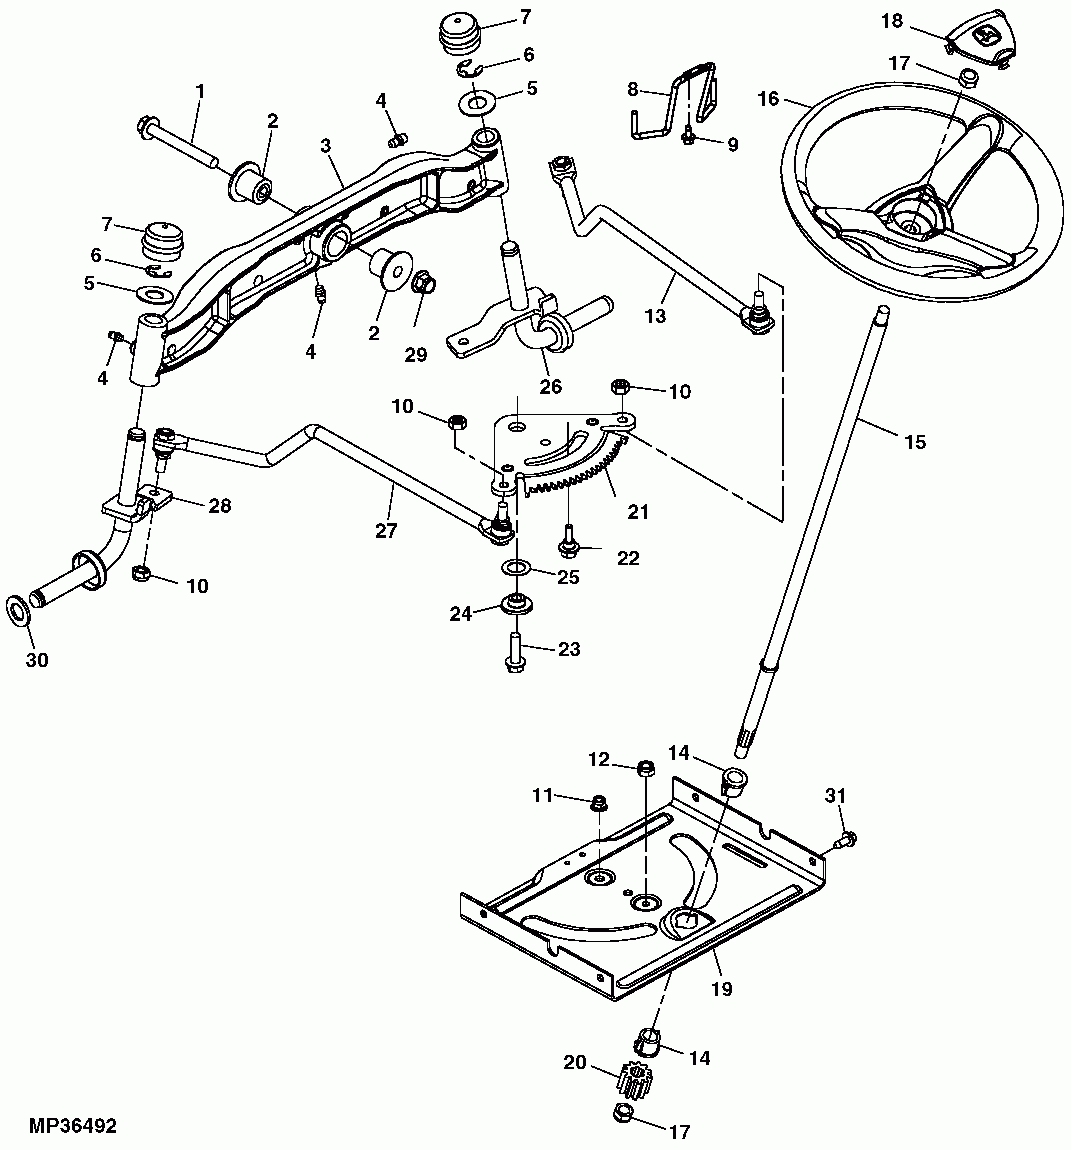 John Deere Parts Diagrams Safasbonus